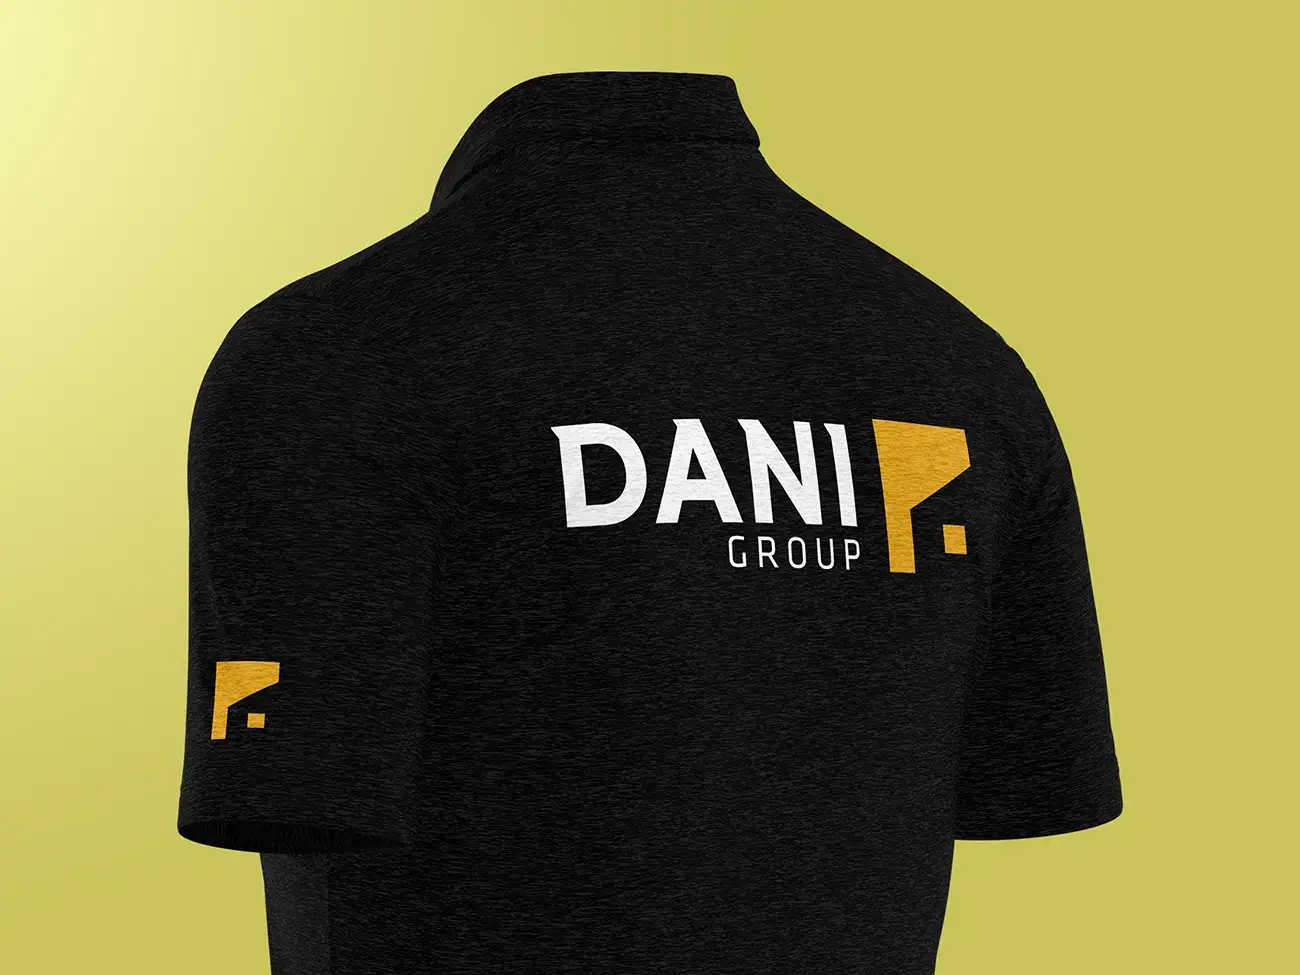 Design af logo Dani Group